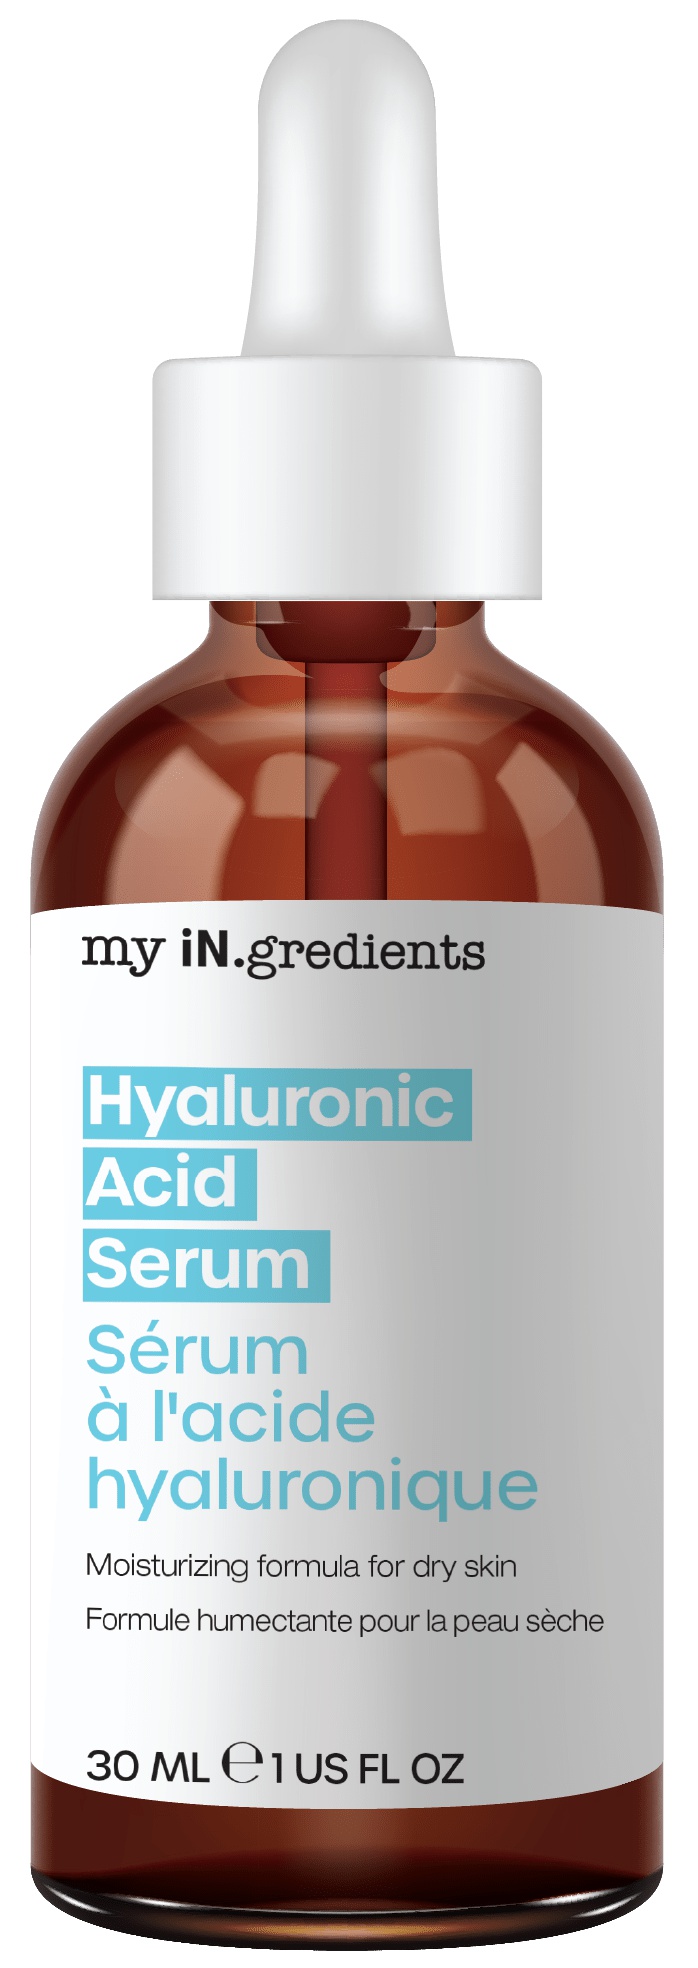 My in. gredients Hyaluronic Acid Serum